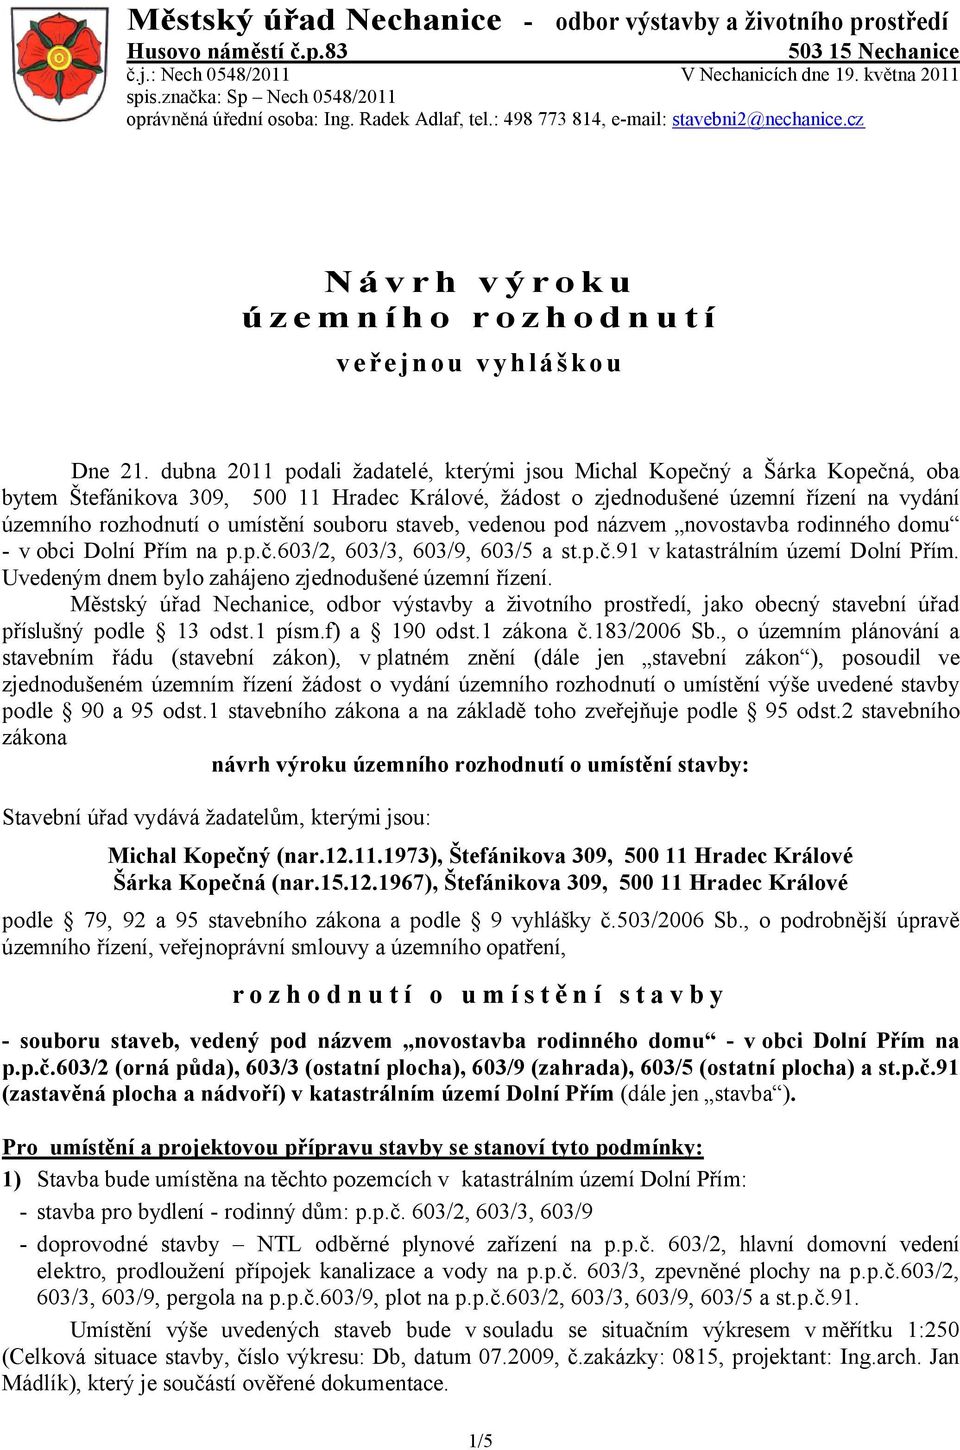 dubna 2011 podali žadatelé, kterými jsou Michal Kopečný a Šárka Kopečná, oba bytem Štefánikova 309, 500 11 Hradec Králové, žádost o zjednodušené územní řízení na vydání územního rozhodnutí o umístění